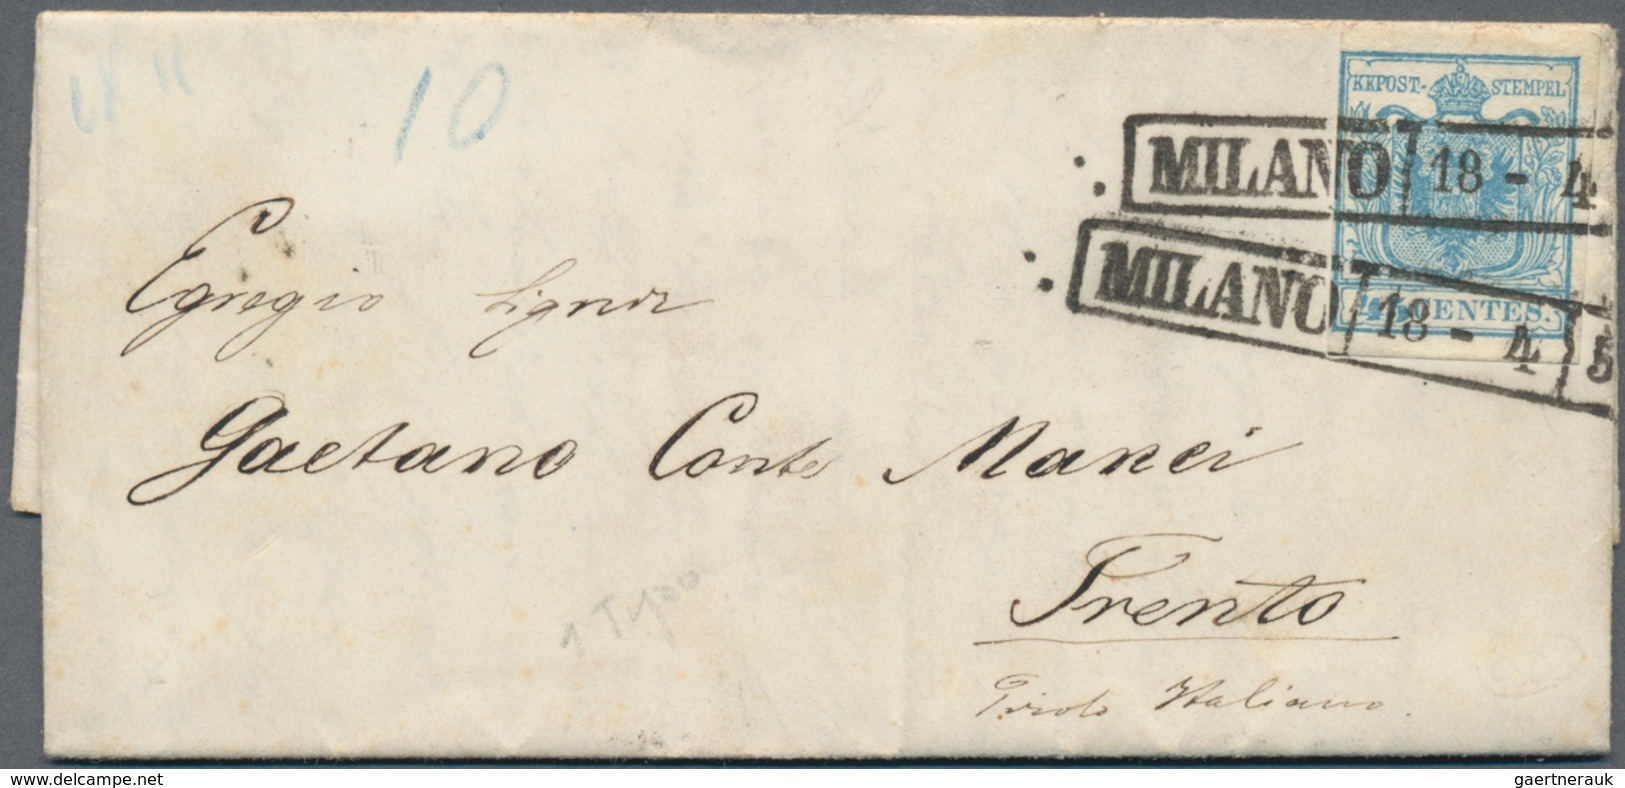 Österreich: ab 1858, schöner Klassik-Briefe-Nachlass von rund 170 Belegen, dabei herrlicher Lombarde